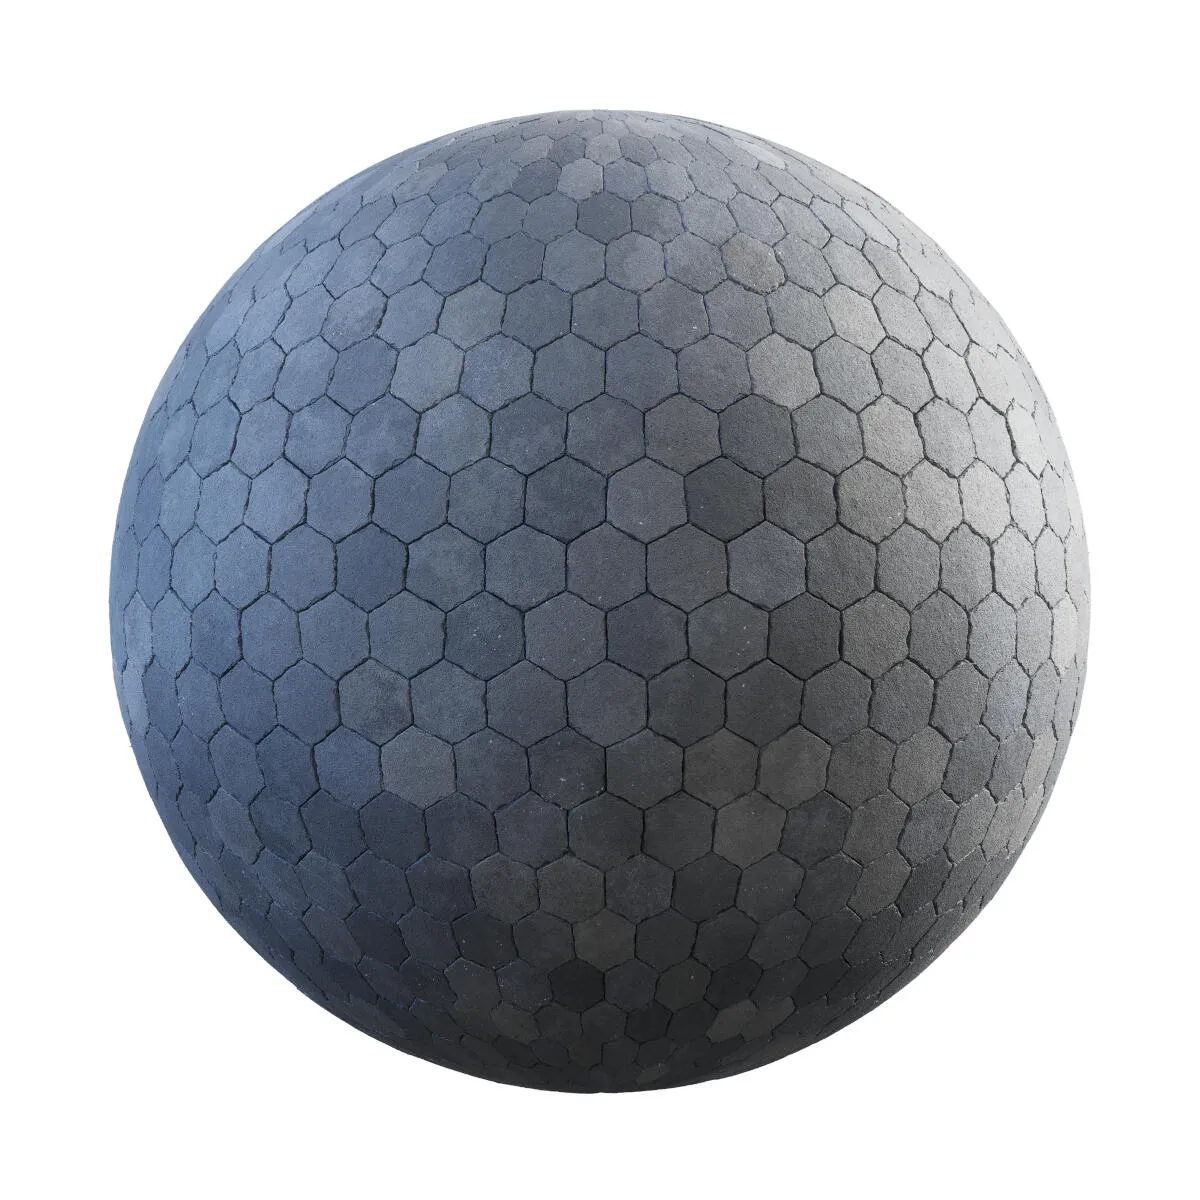 PBR Textures Volume 34 – Pavements – 4K – grey_hexagon_concrete_pavement_36_28